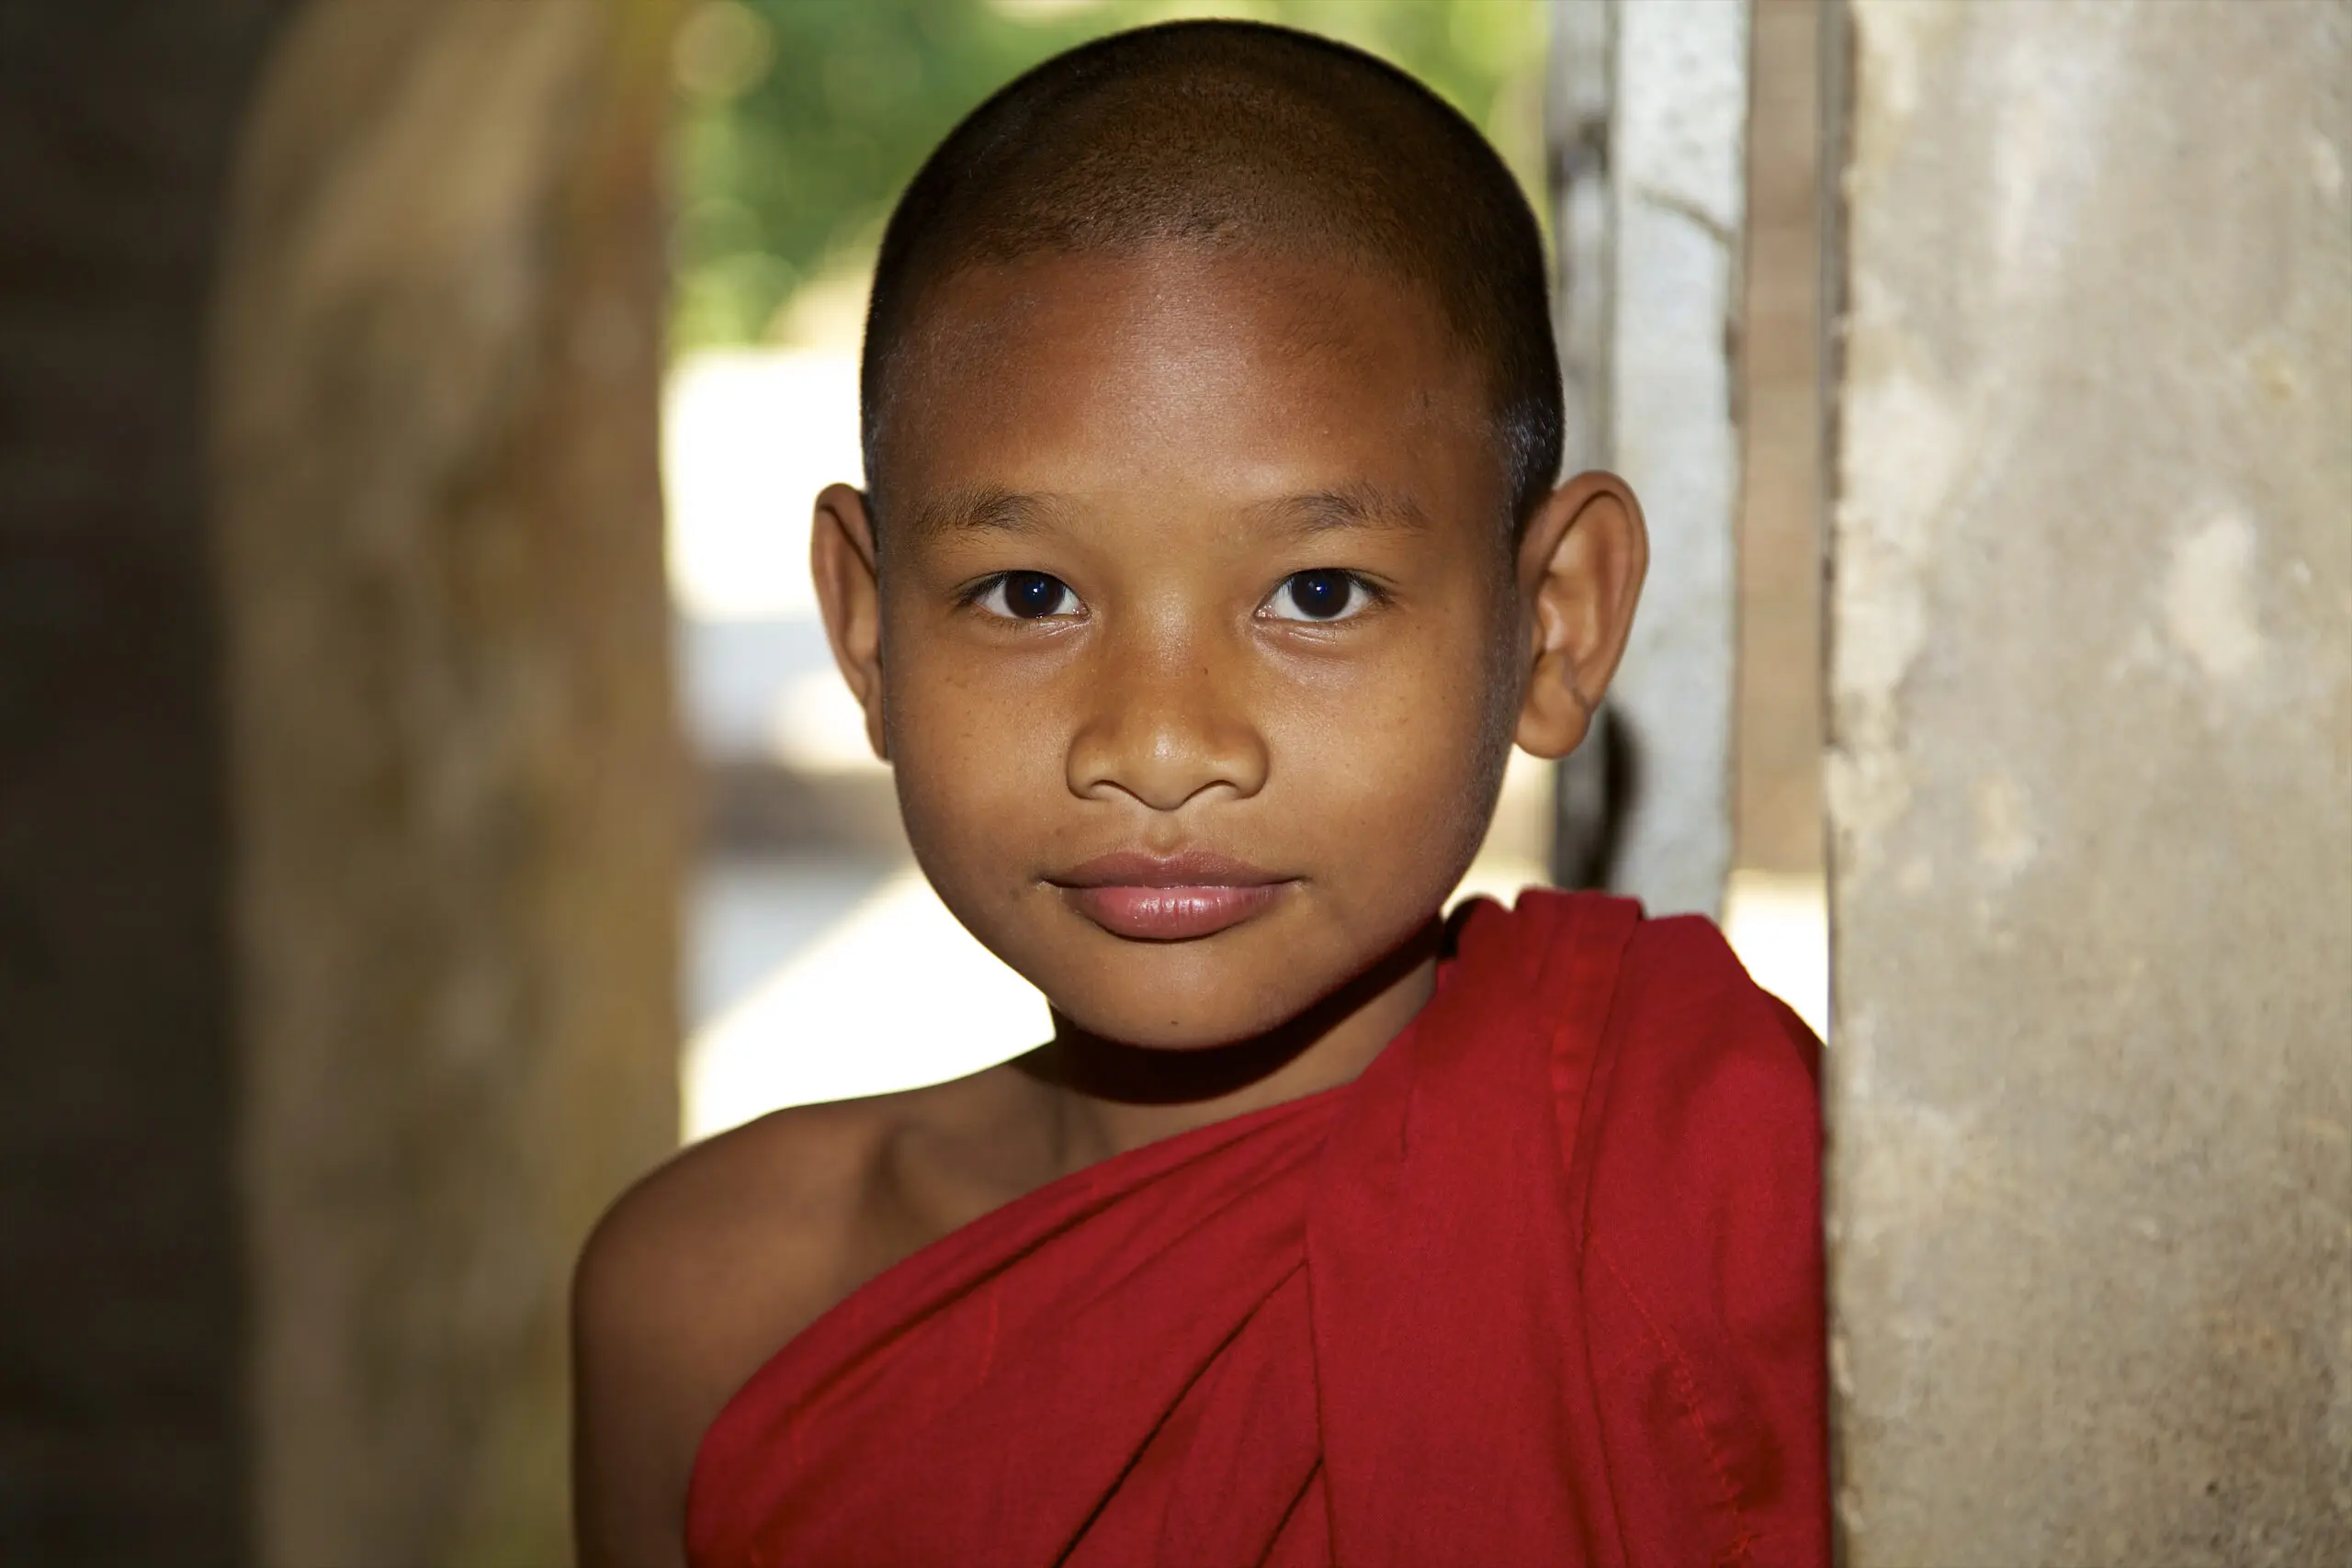 Wandbild (2555) The Young Monk präsentiert: Menschen,Kinder